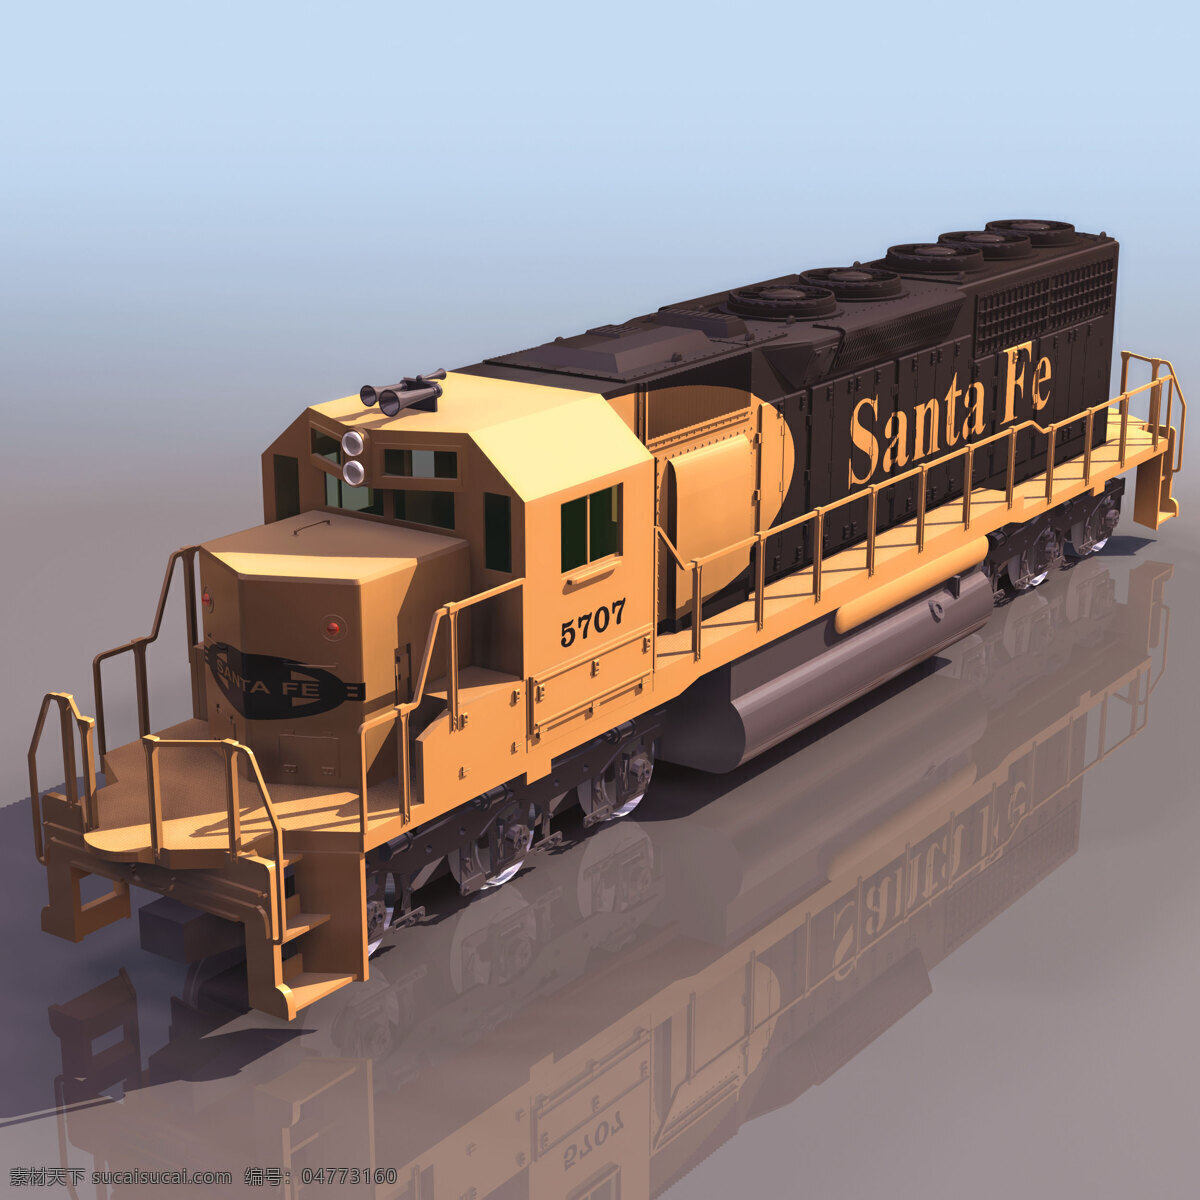 老式 车头 模型 3d模型 火车 老式车头模型 3d模型素材 其他3d模型